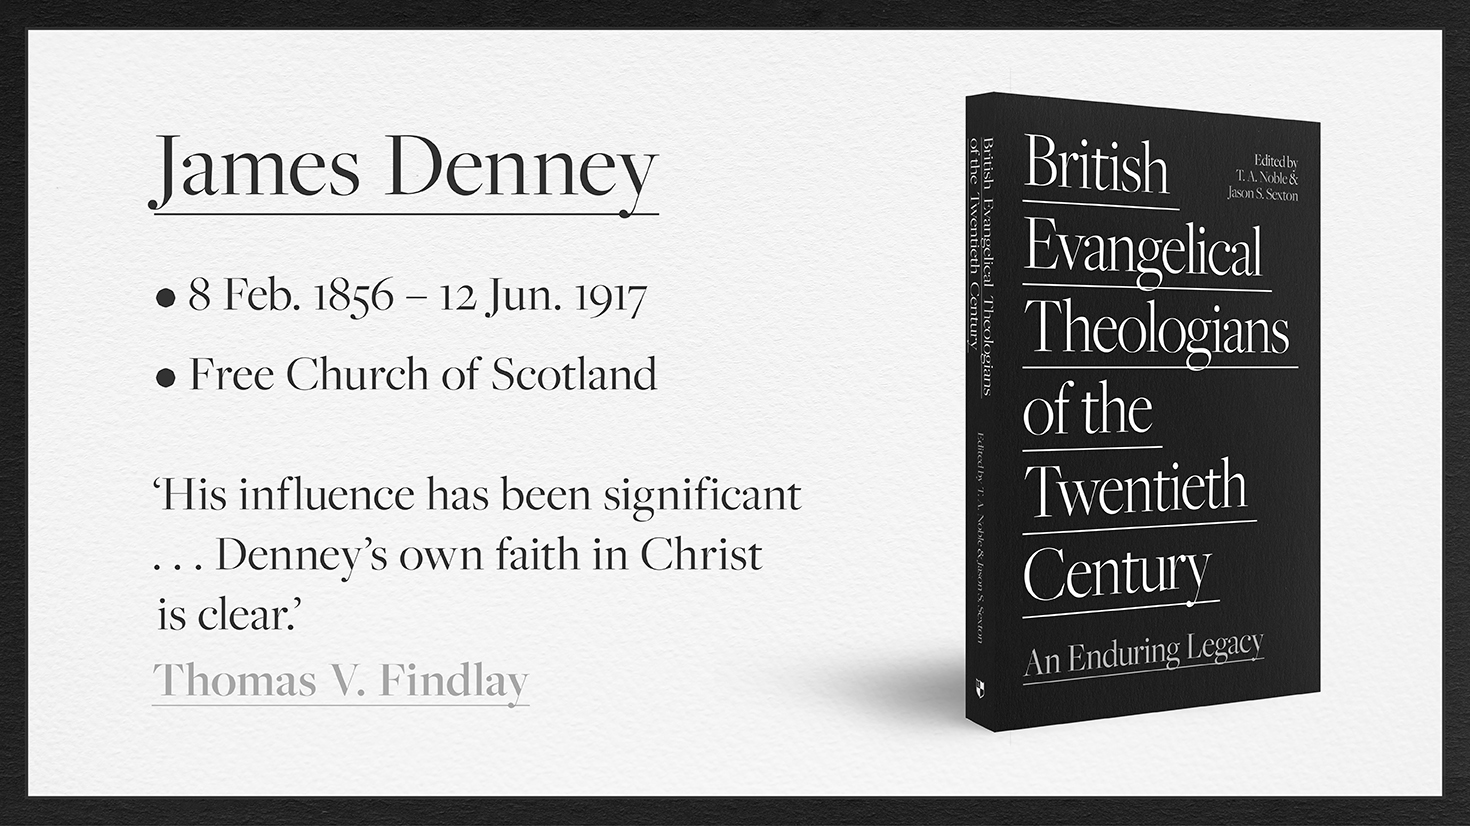 James Denney: British Evangelical Theologian of the Twentieth Century